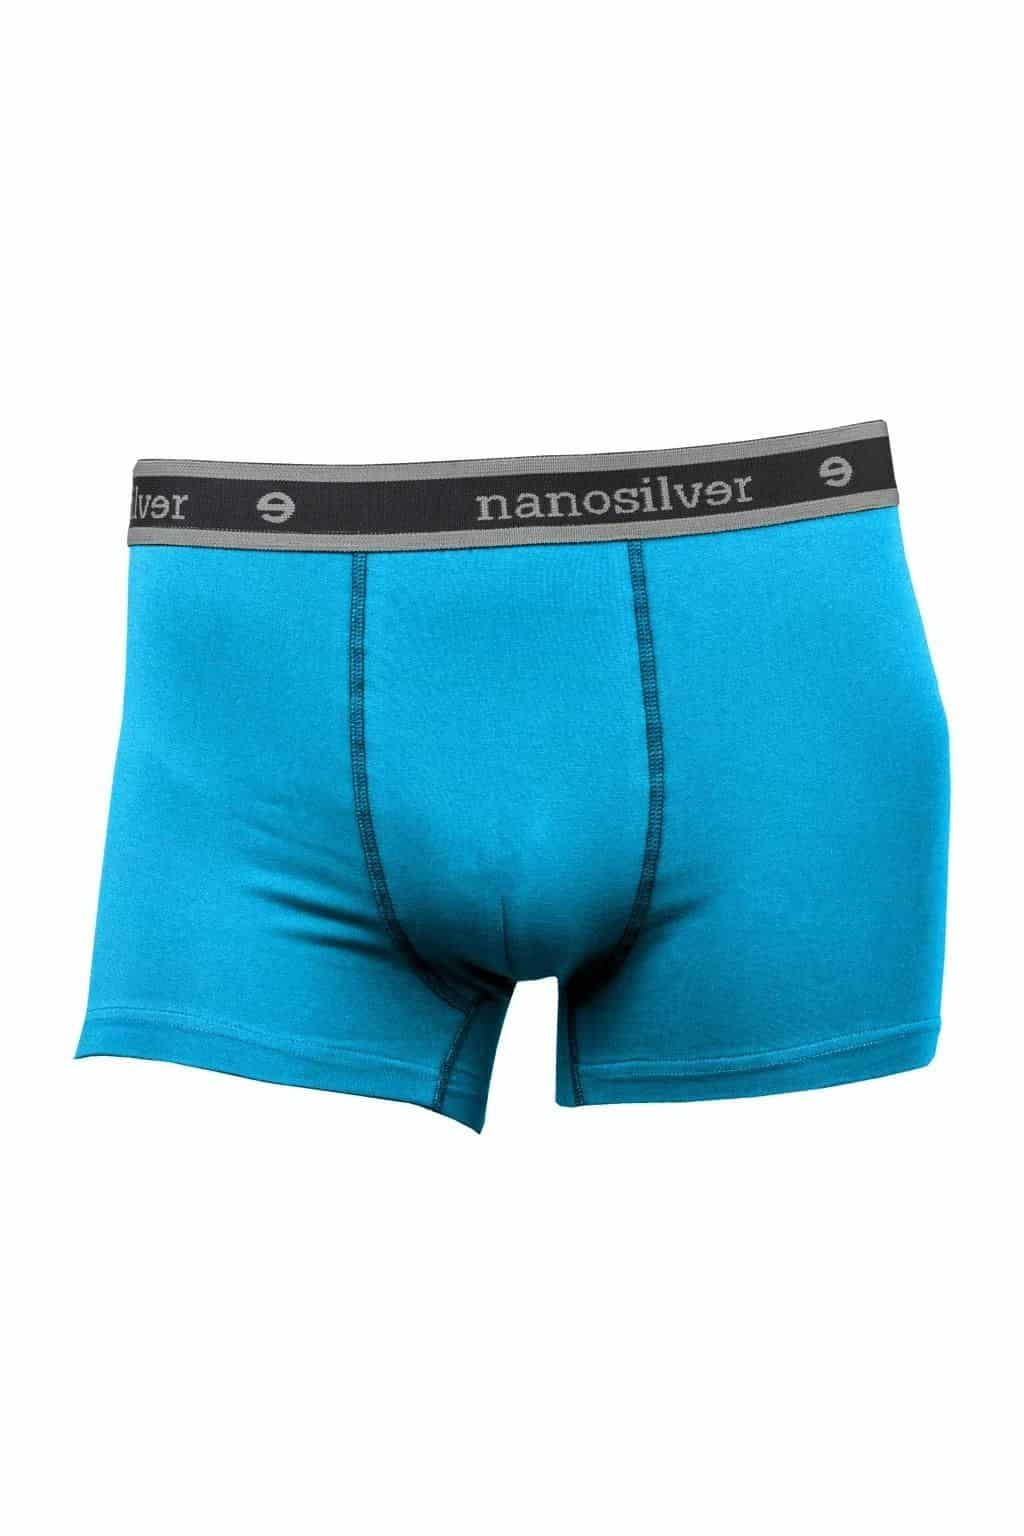 nanosilver® Nano boxerky s gumou nanosilver bez zadního švu – modré Velikost: XL